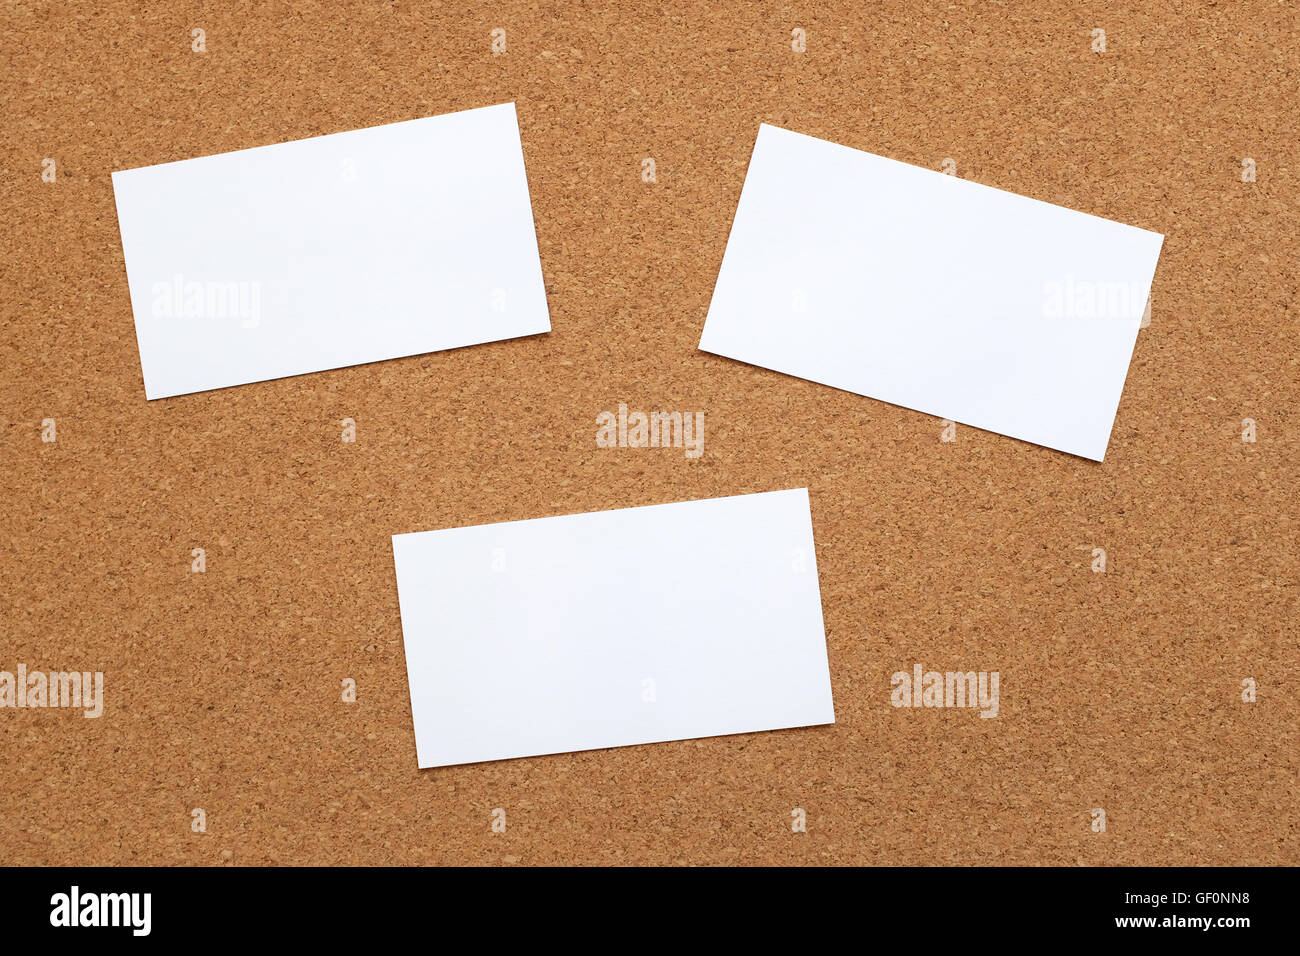 Drei leere Grußkarten auf einer Kork-Memo board Hintergrund Stockfoto